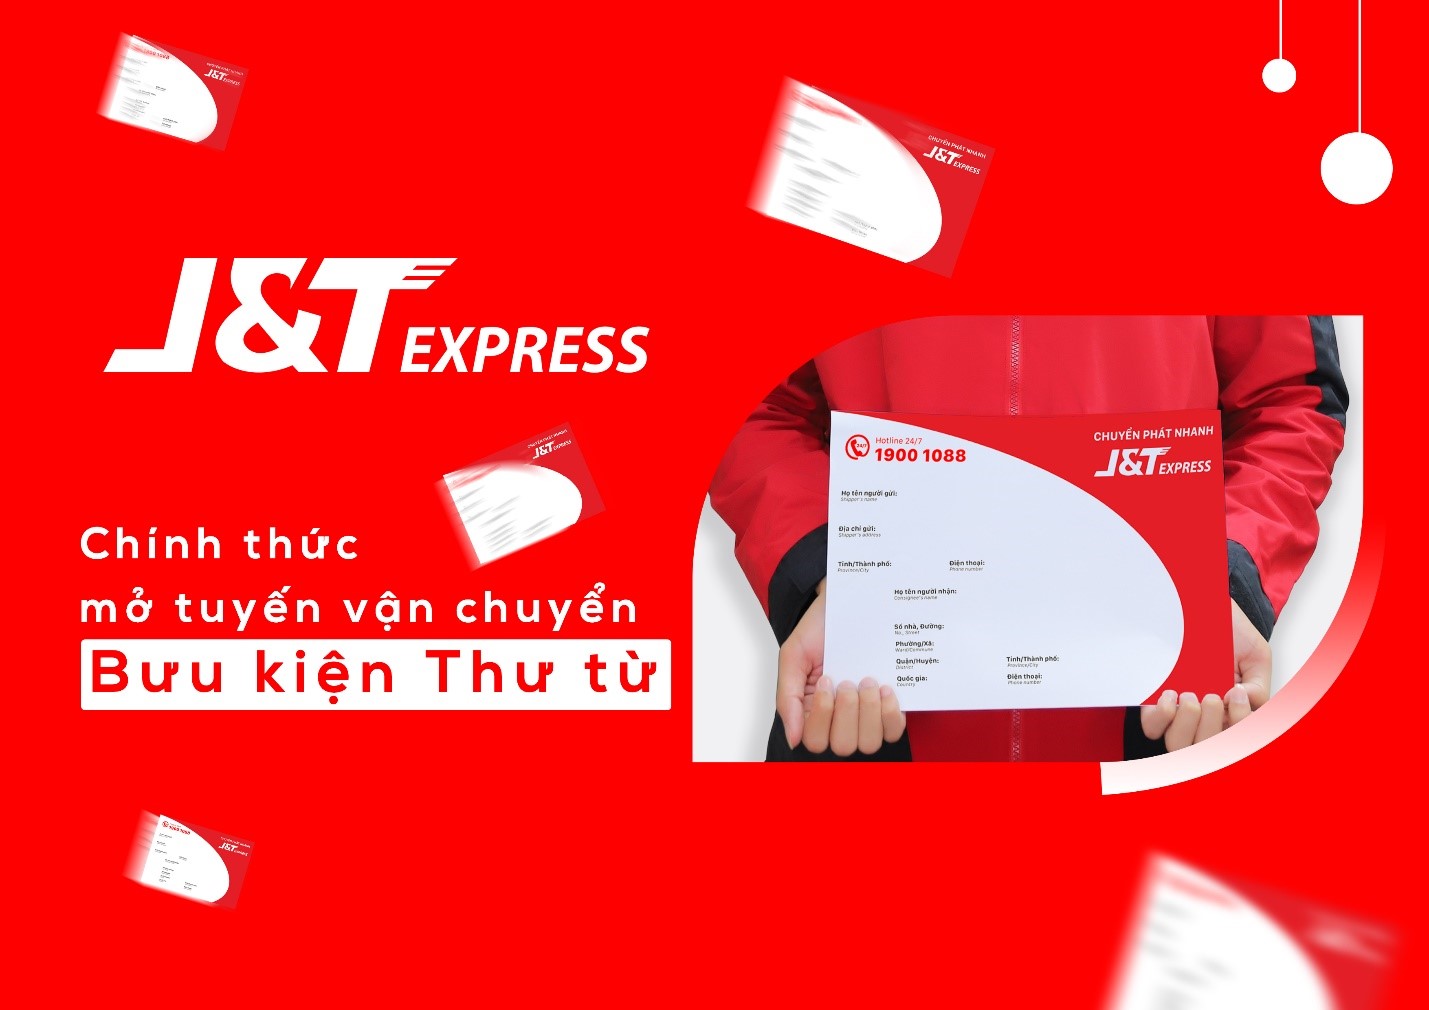 J&T Express - Giao Hàng Nhanh ảnh 1